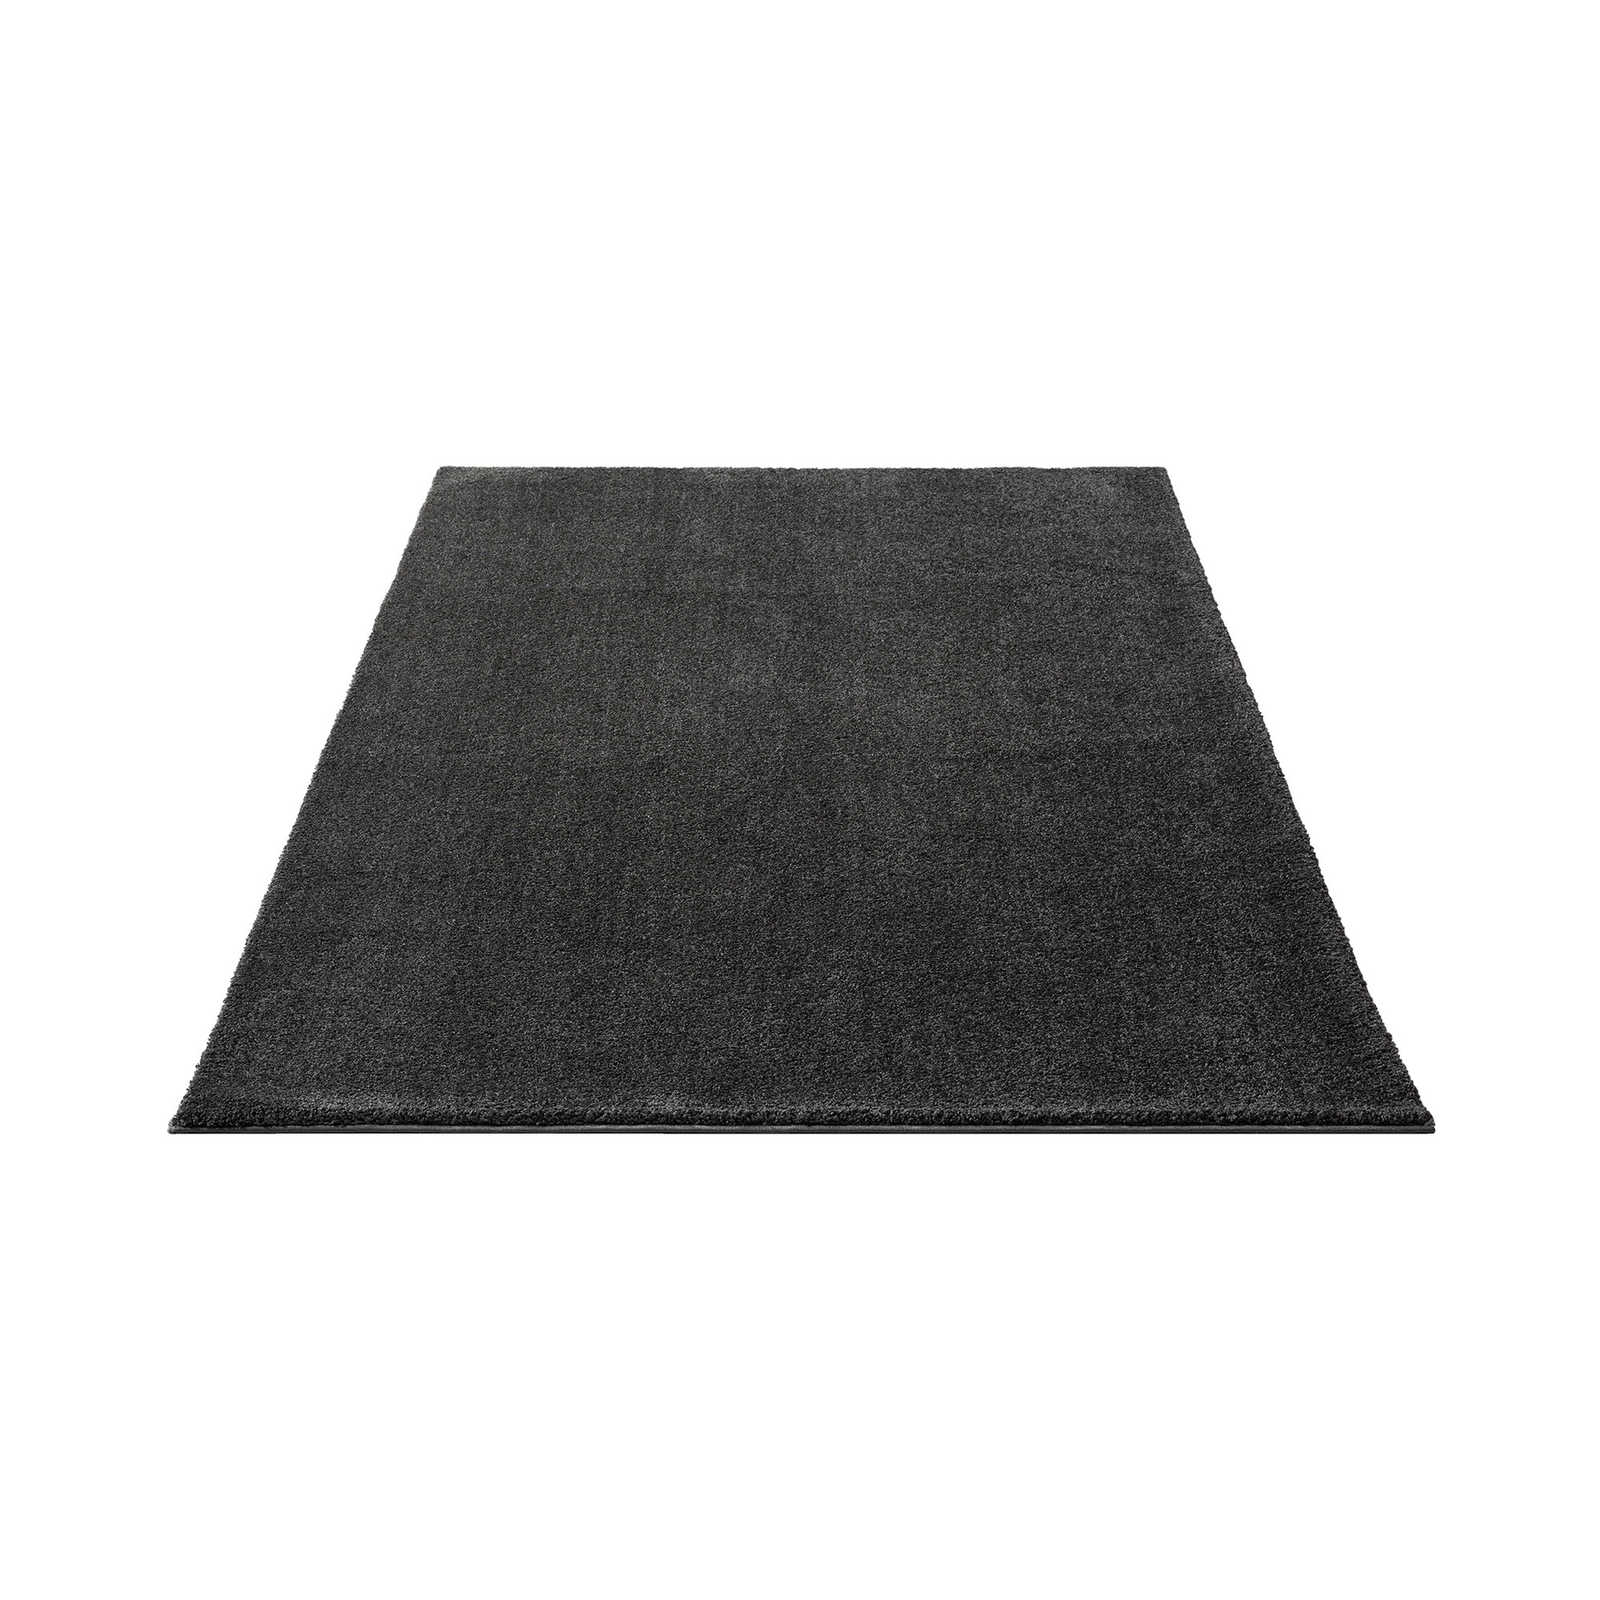 Soft short pile carpet in anthracite - 230 x 160 cm
